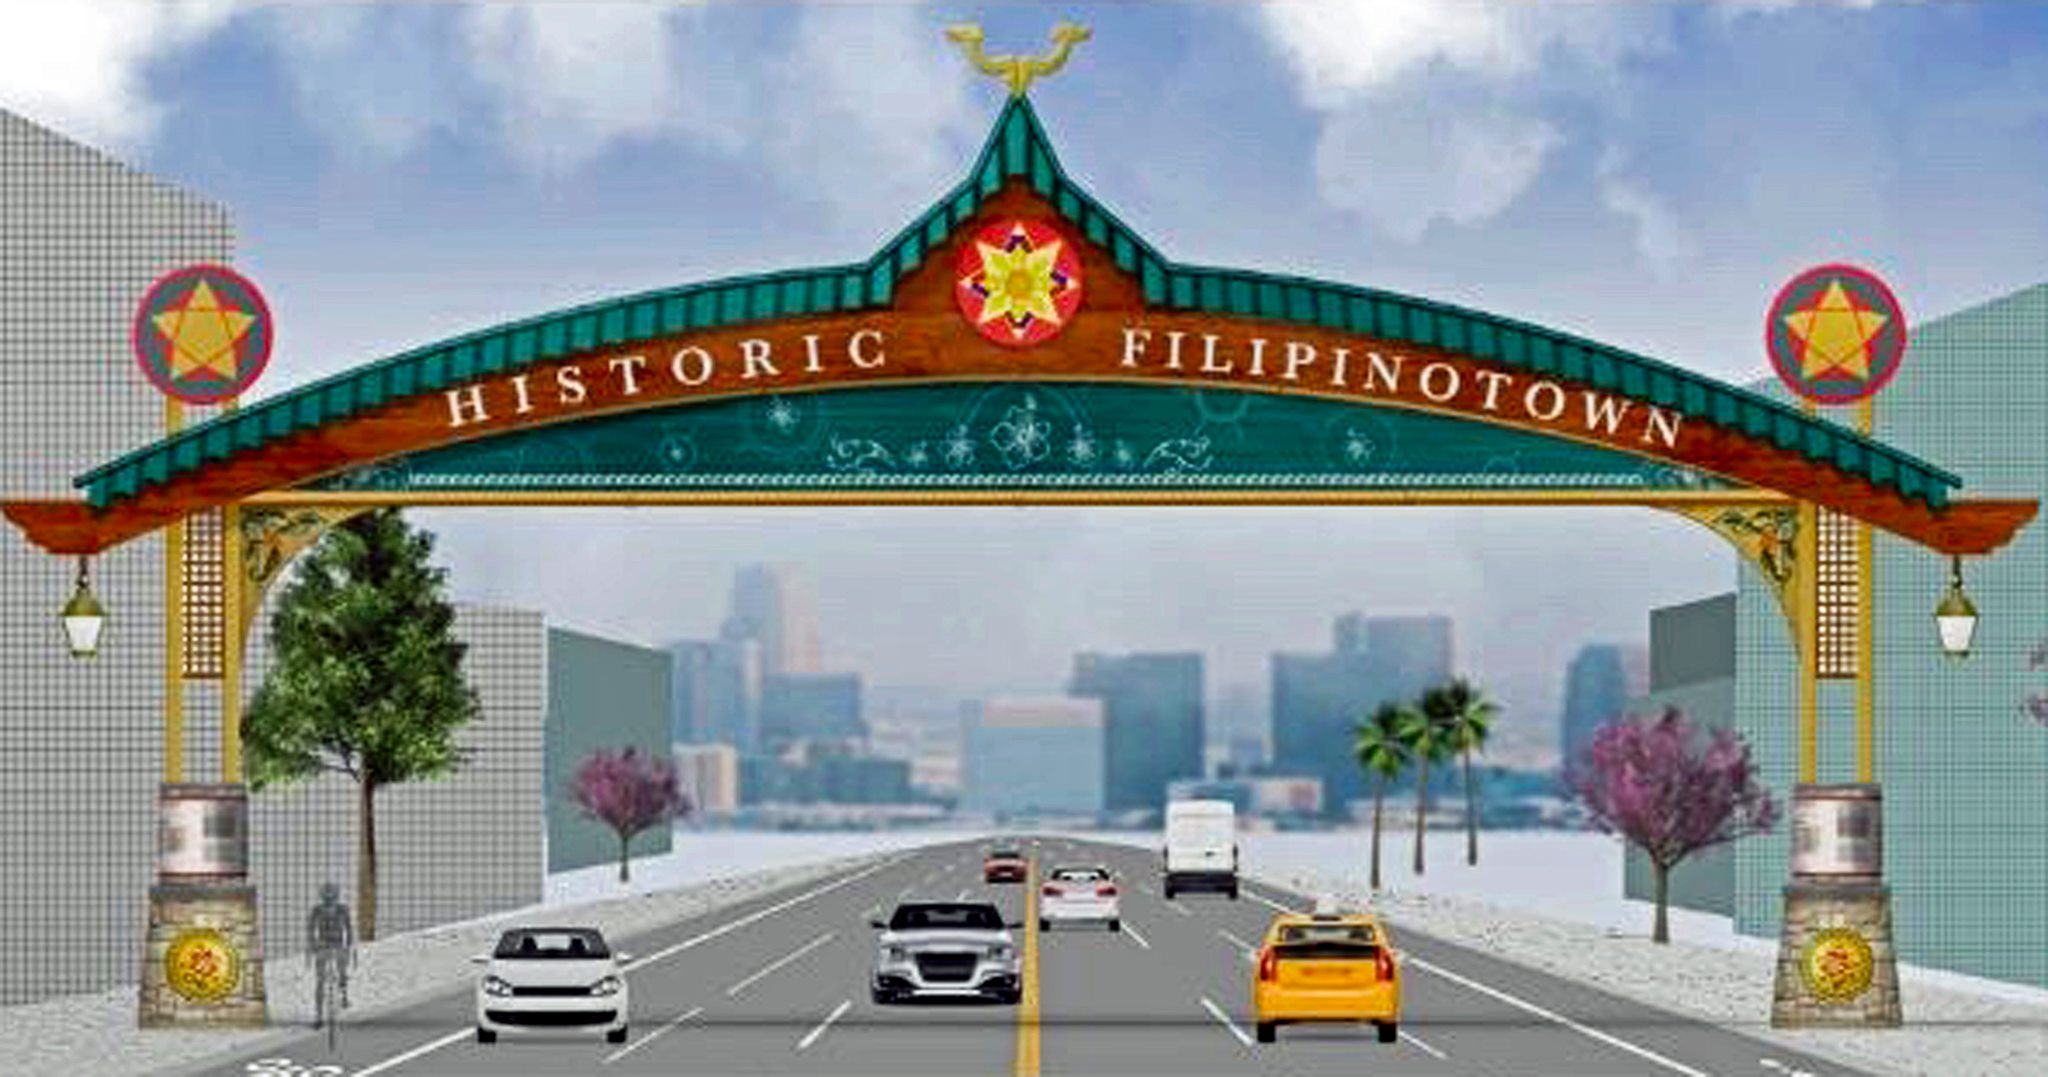 Filipinotown & Little Manila - Historic Filipinotown